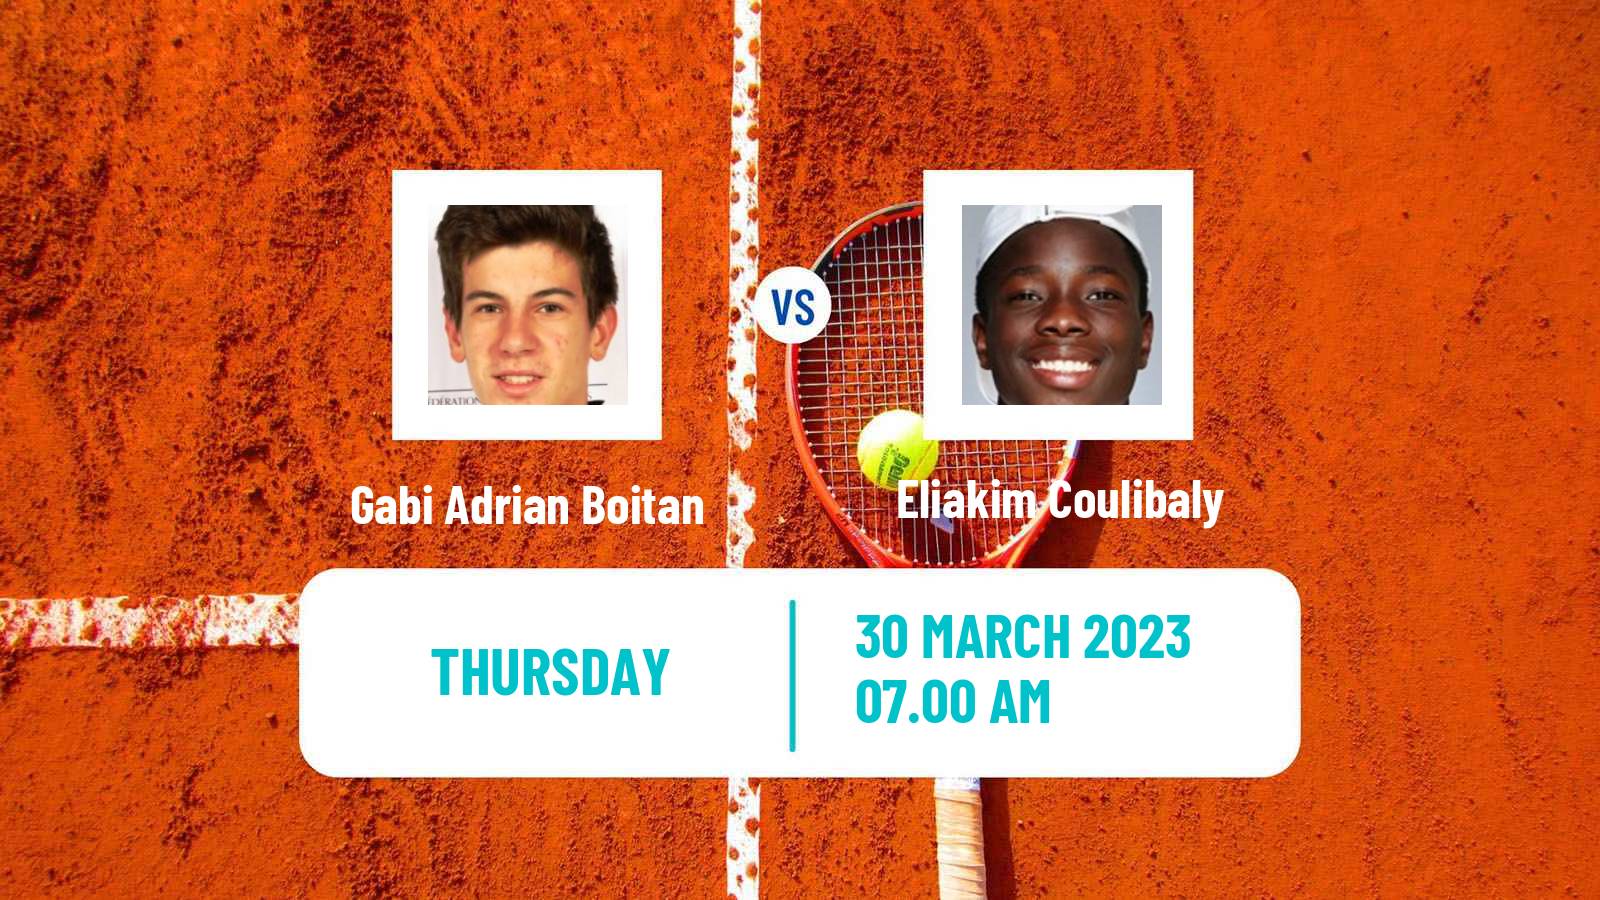 Tennis ITF Tournaments Gabi Adrian Boitan - Eliakim Coulibaly